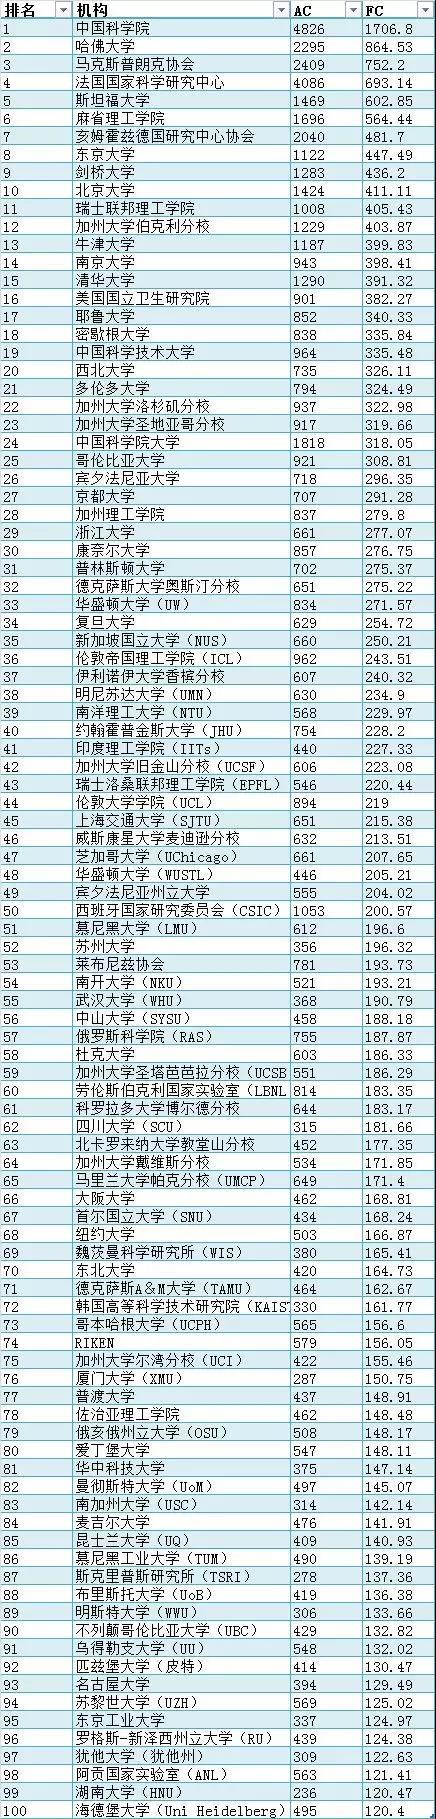 最新自然指数排名：中国科学院位居榜首，湖南大学首次入围全球大学前100强2